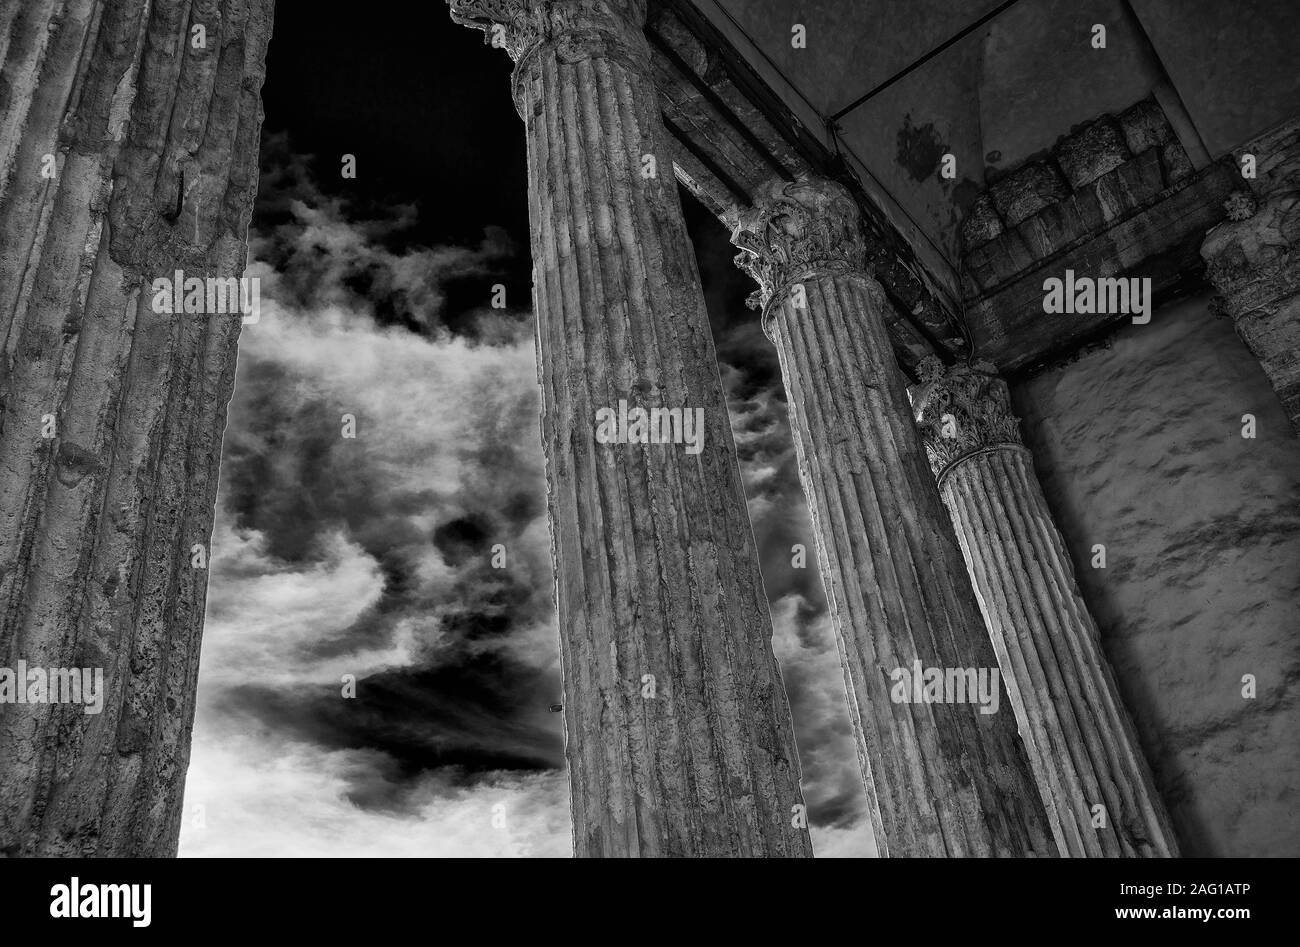 Antike römische Architektur und Archäologie in Assisi. Tempel der Minerva alten Spalten mit Wolken, errichtet im 1. Jahrhundert v. Chr. (Schwarz und Weiß) Stockfoto